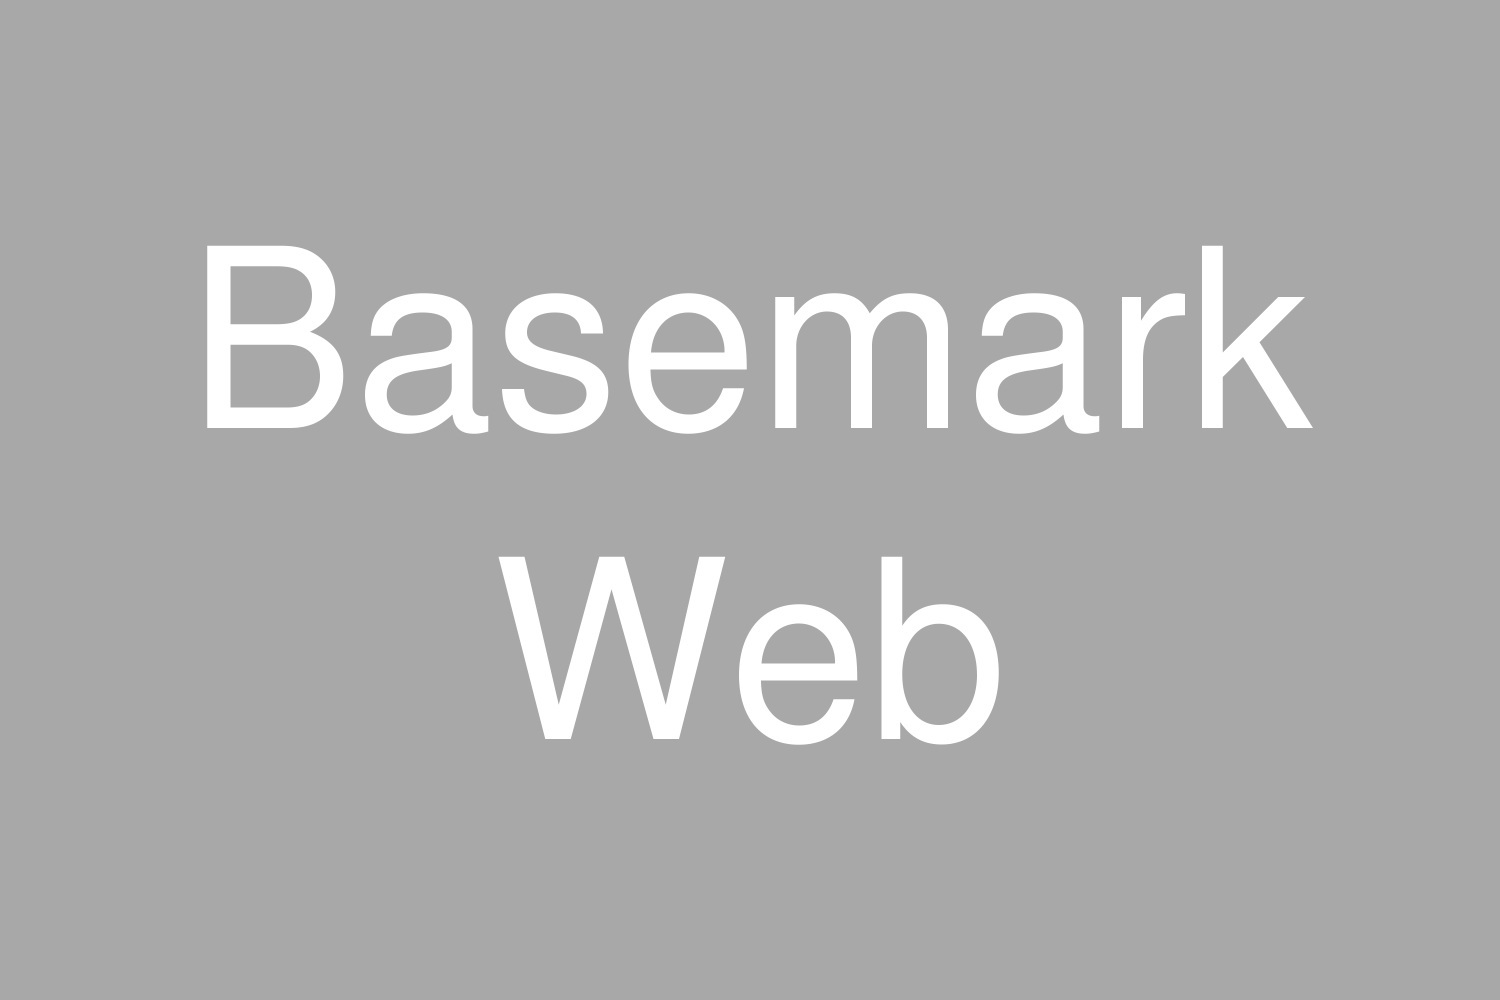 Basemark Web